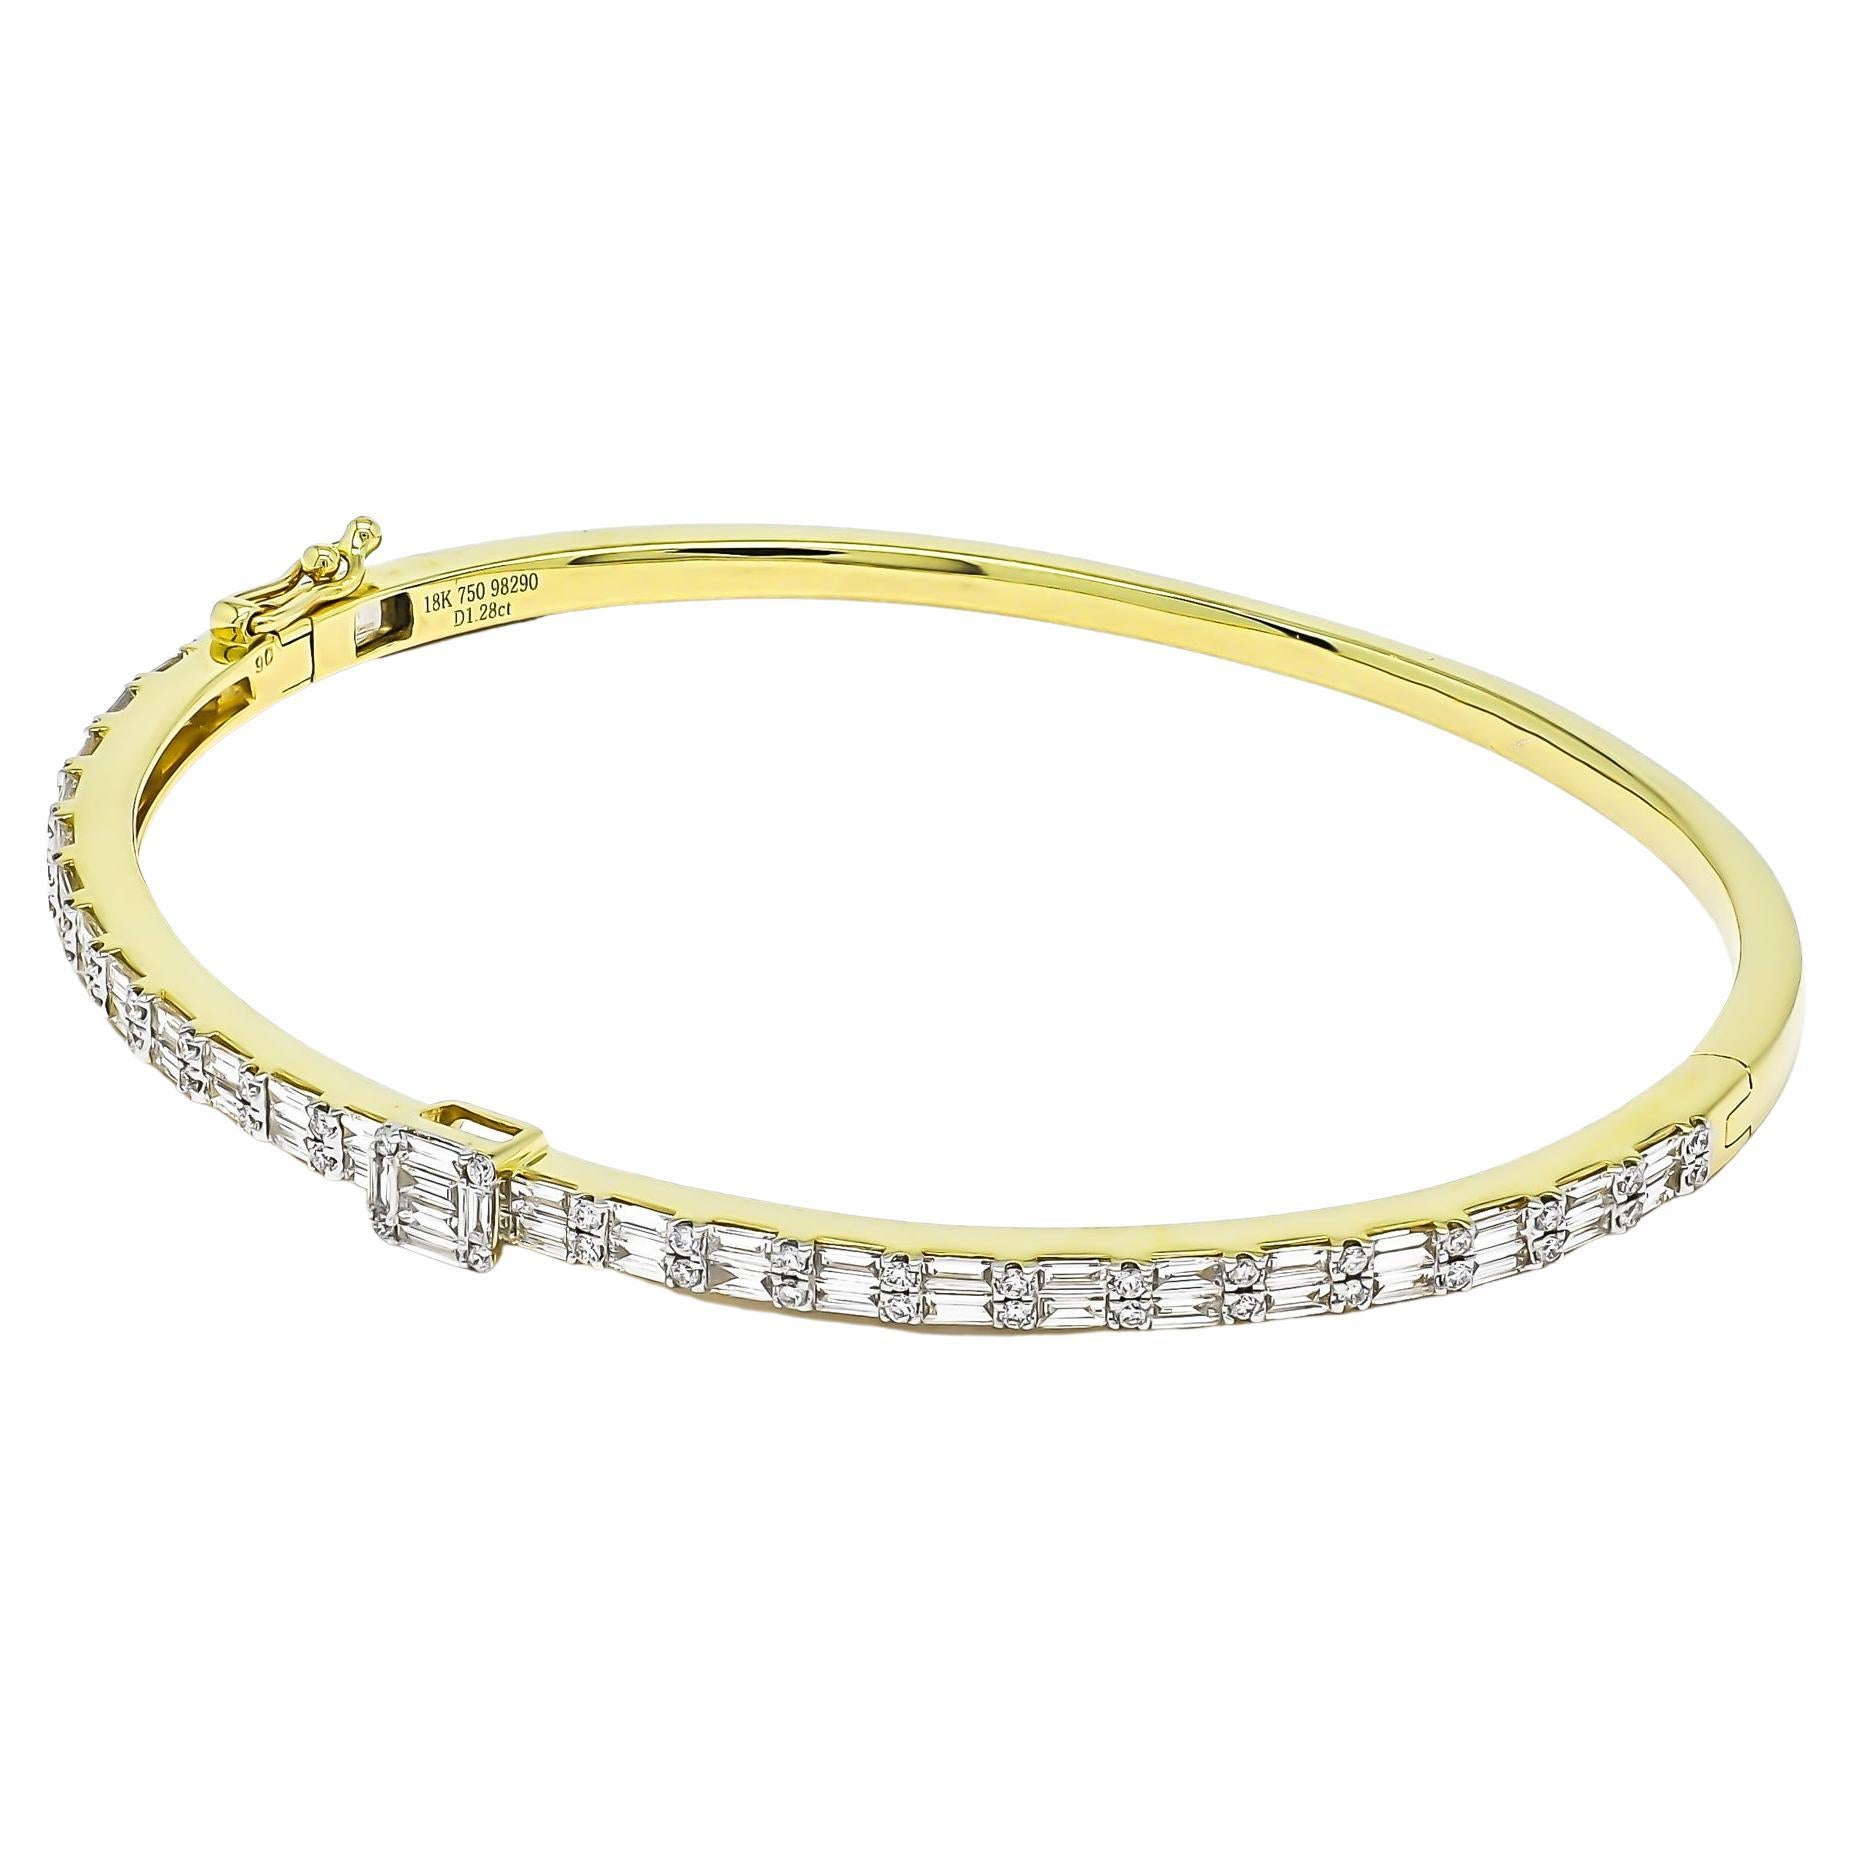 Plongez dans l'élégance intemporelle de ce bracelet en or 18 carats, orné de superbes diamants baguettes disposés en une captivante double rangée totalisant 1,28 carat. Chaque diamant a été méticuleusement serti pour créer un spectacle fascinant de